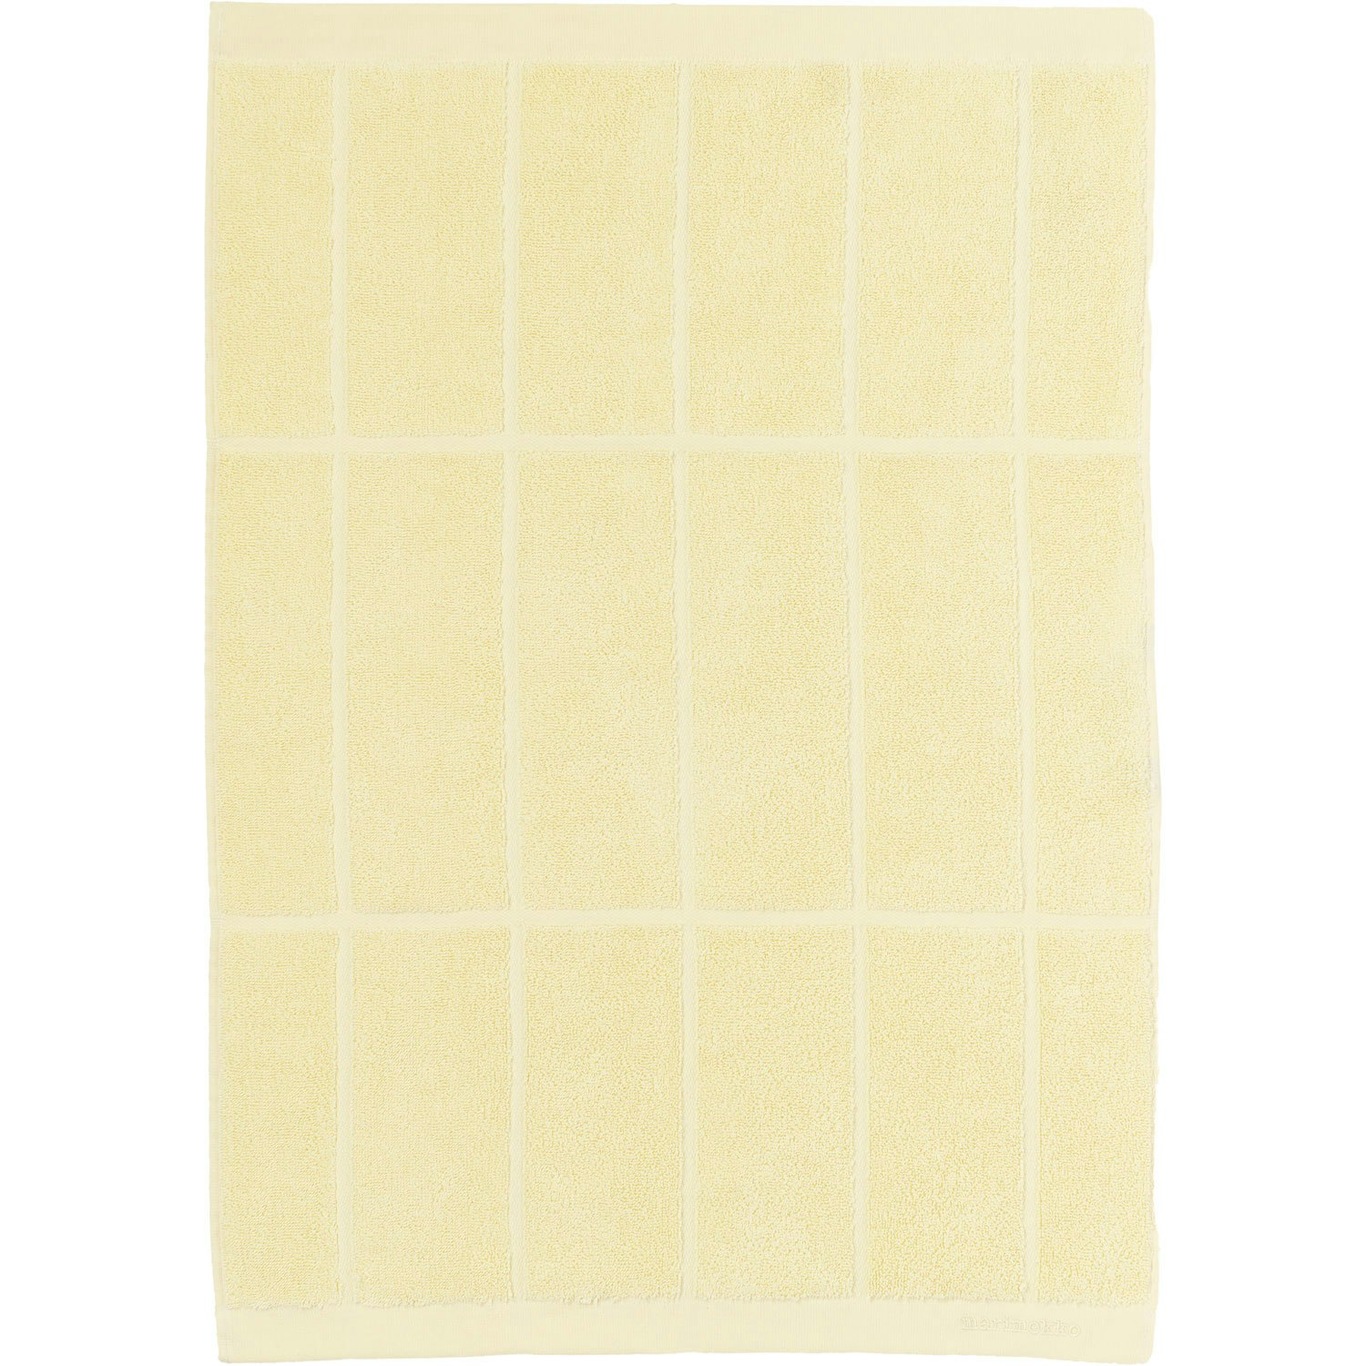 Tiiliskivi Handtuch 50x70 cm, Butter Yellow